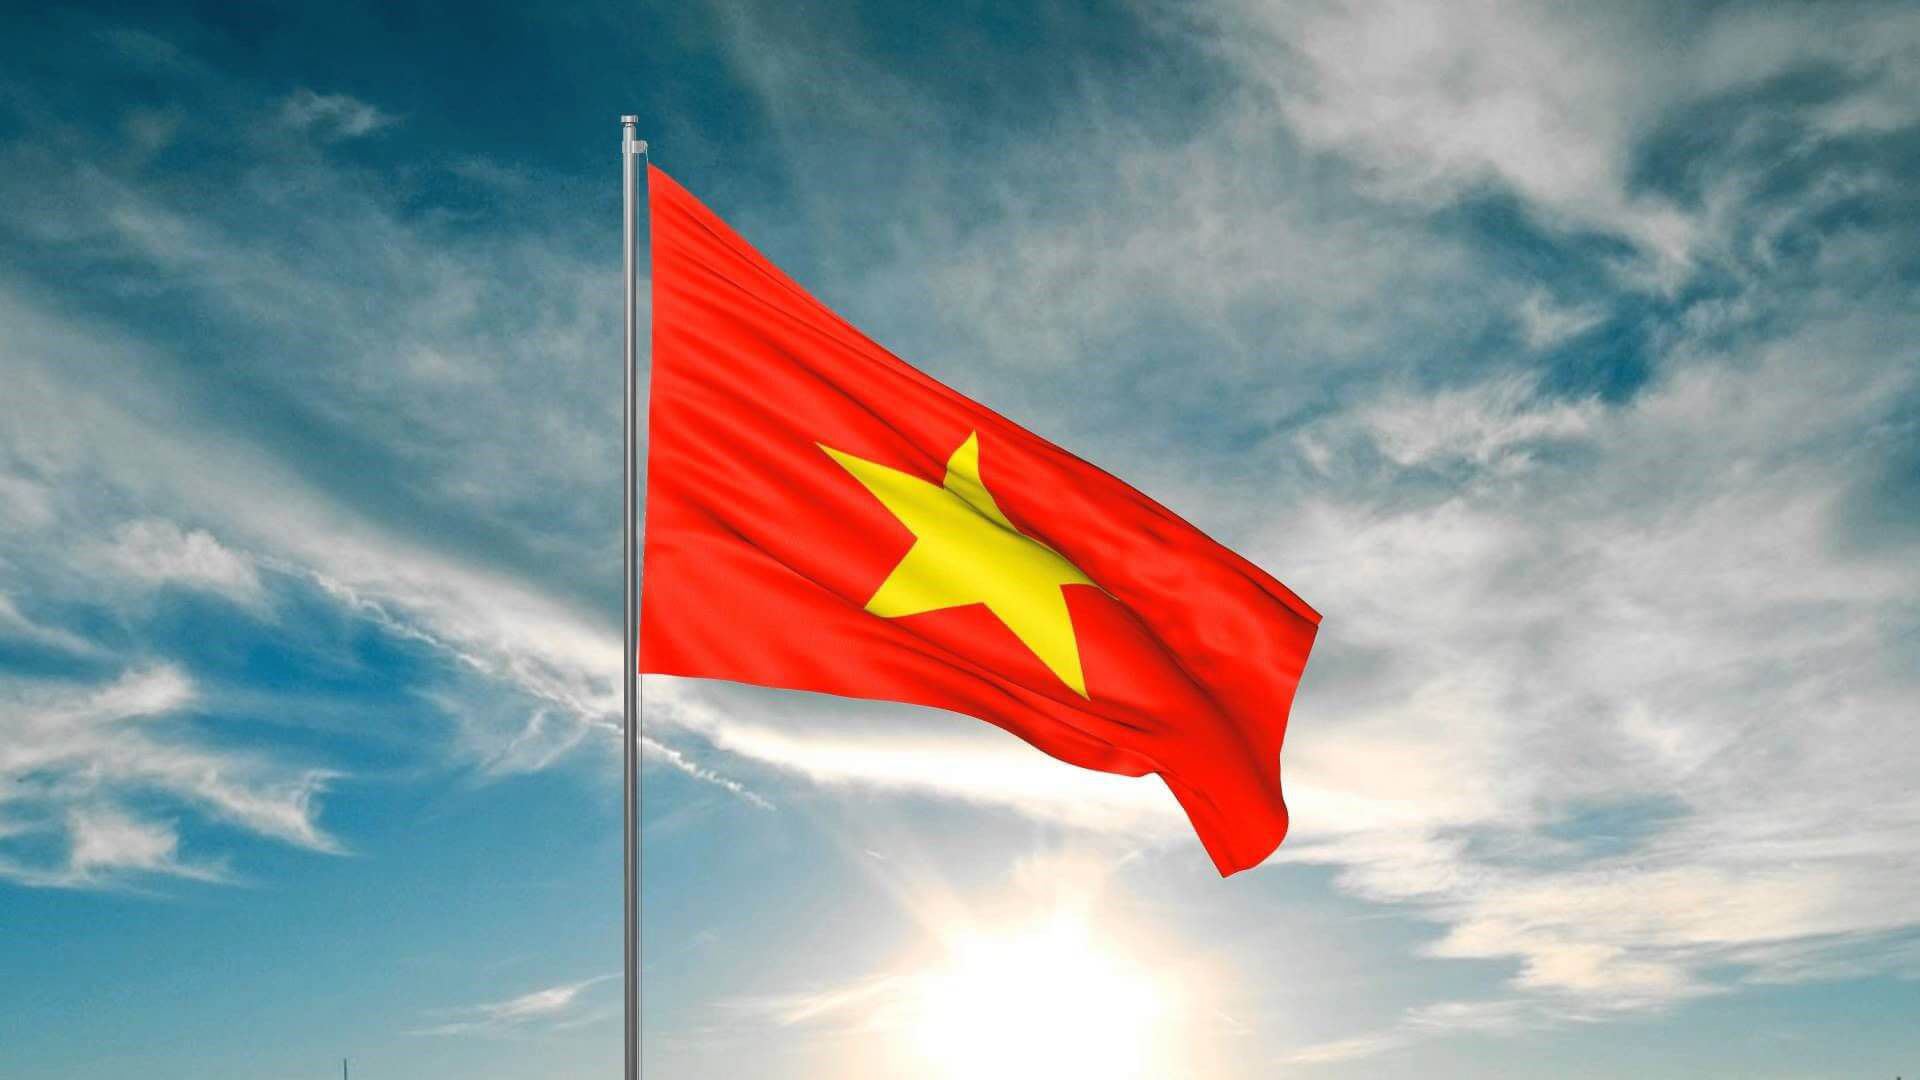 Áo cờ đỏ sao vàng là một biểu tượng thể hiện tình yêu quê hương rất đẹp của người Việt. Hãy xem hình ảnh áo cờ đỏ sao vàng để cảm nhận sức mạnh của người dân Việt Nam trong việc bảo vệ đất nước.